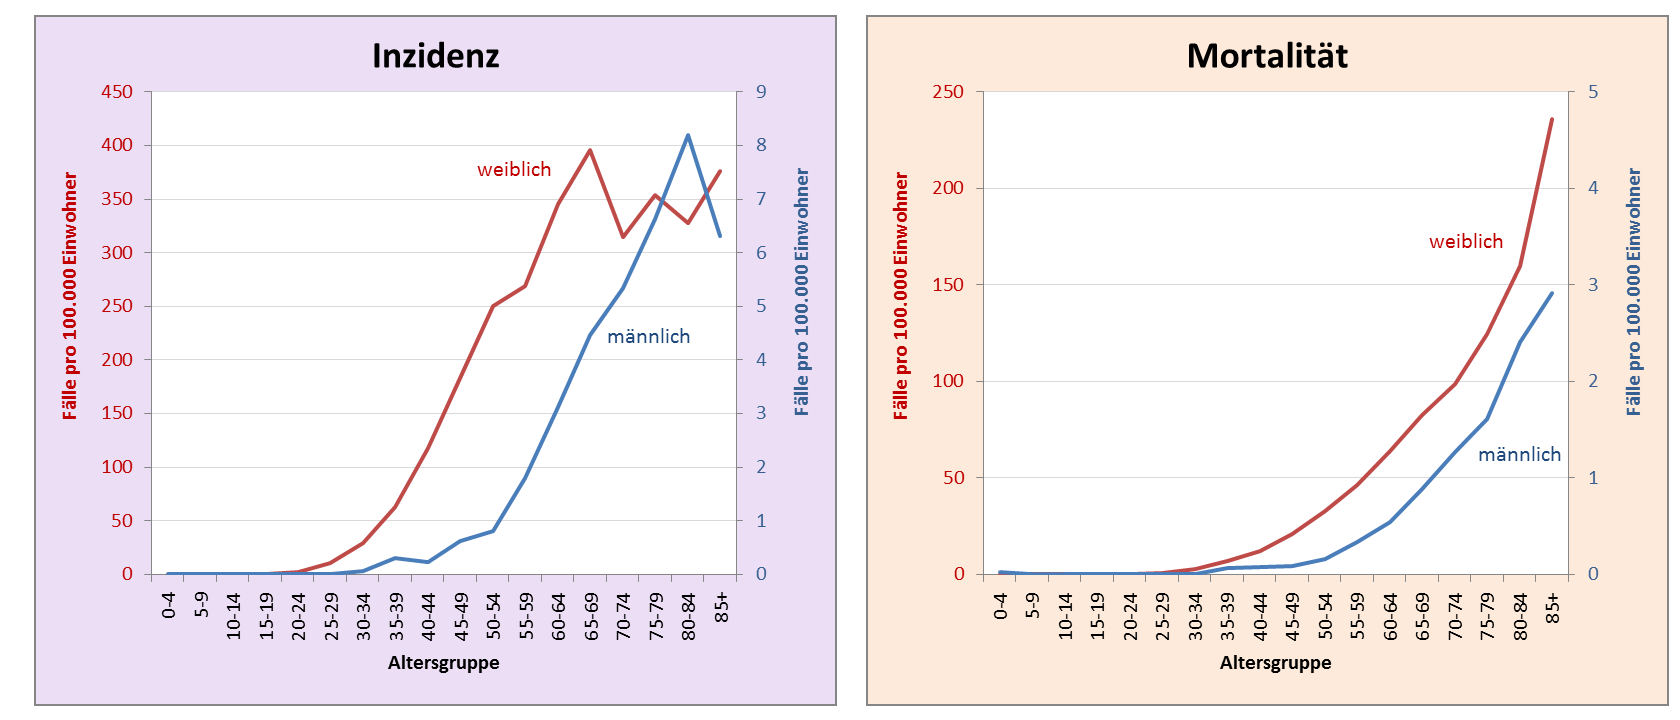 Vergleich der Altersverteilung bei Inzidenz und Mortalität zwischen den Geschlechtern beim Brustkrebs in Deutschland 2009 – 2013